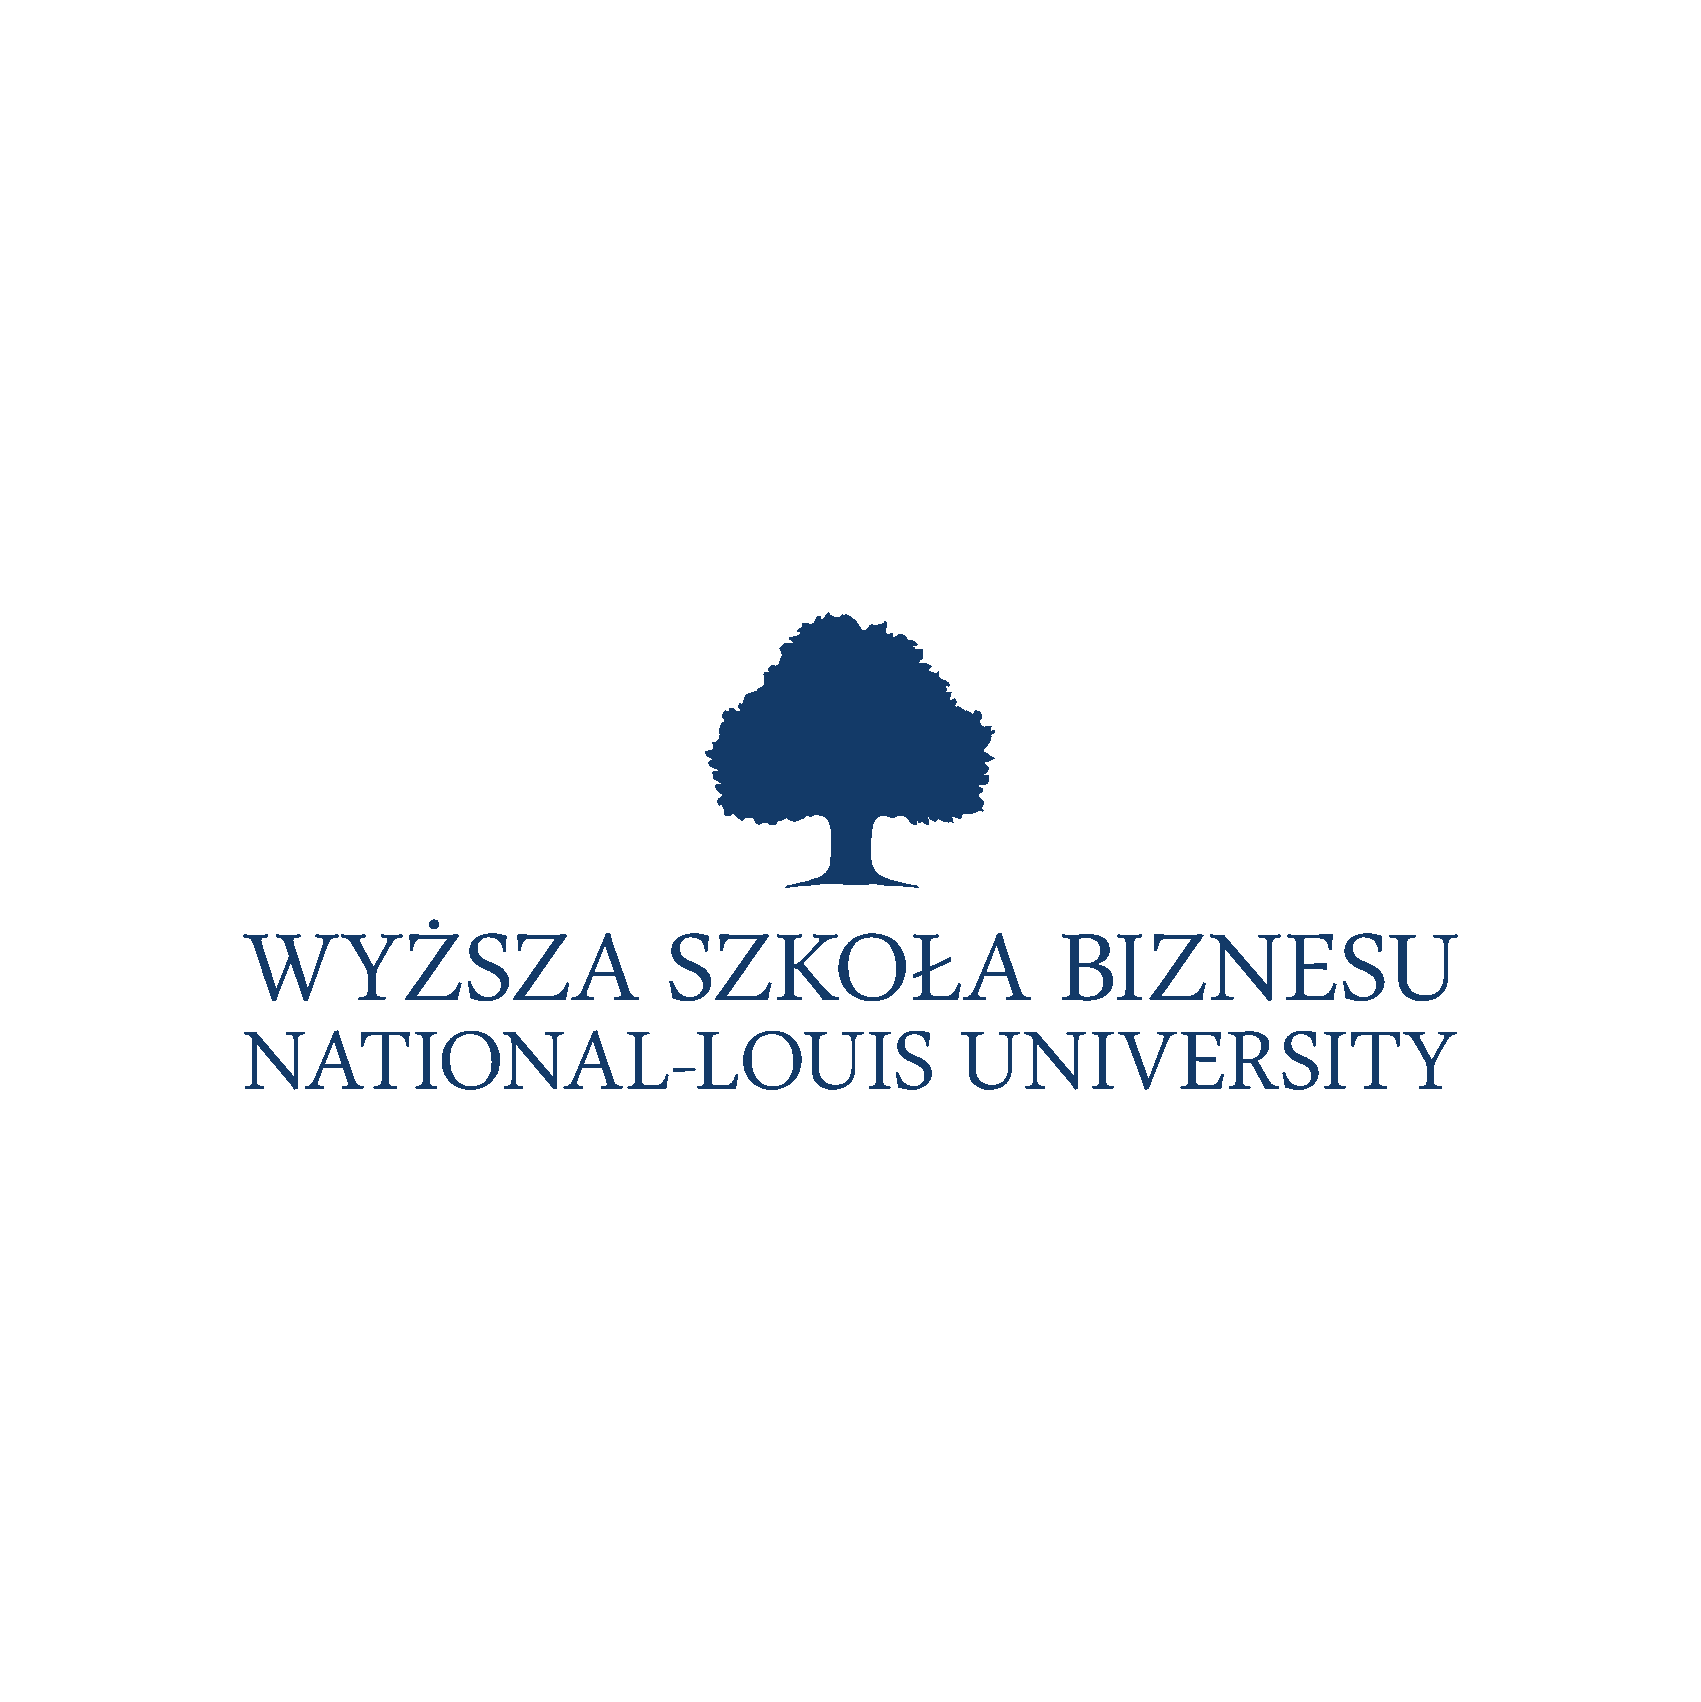 Wyższa Szkoła Biznesu - National-Louis University w Nowym Sączu logo